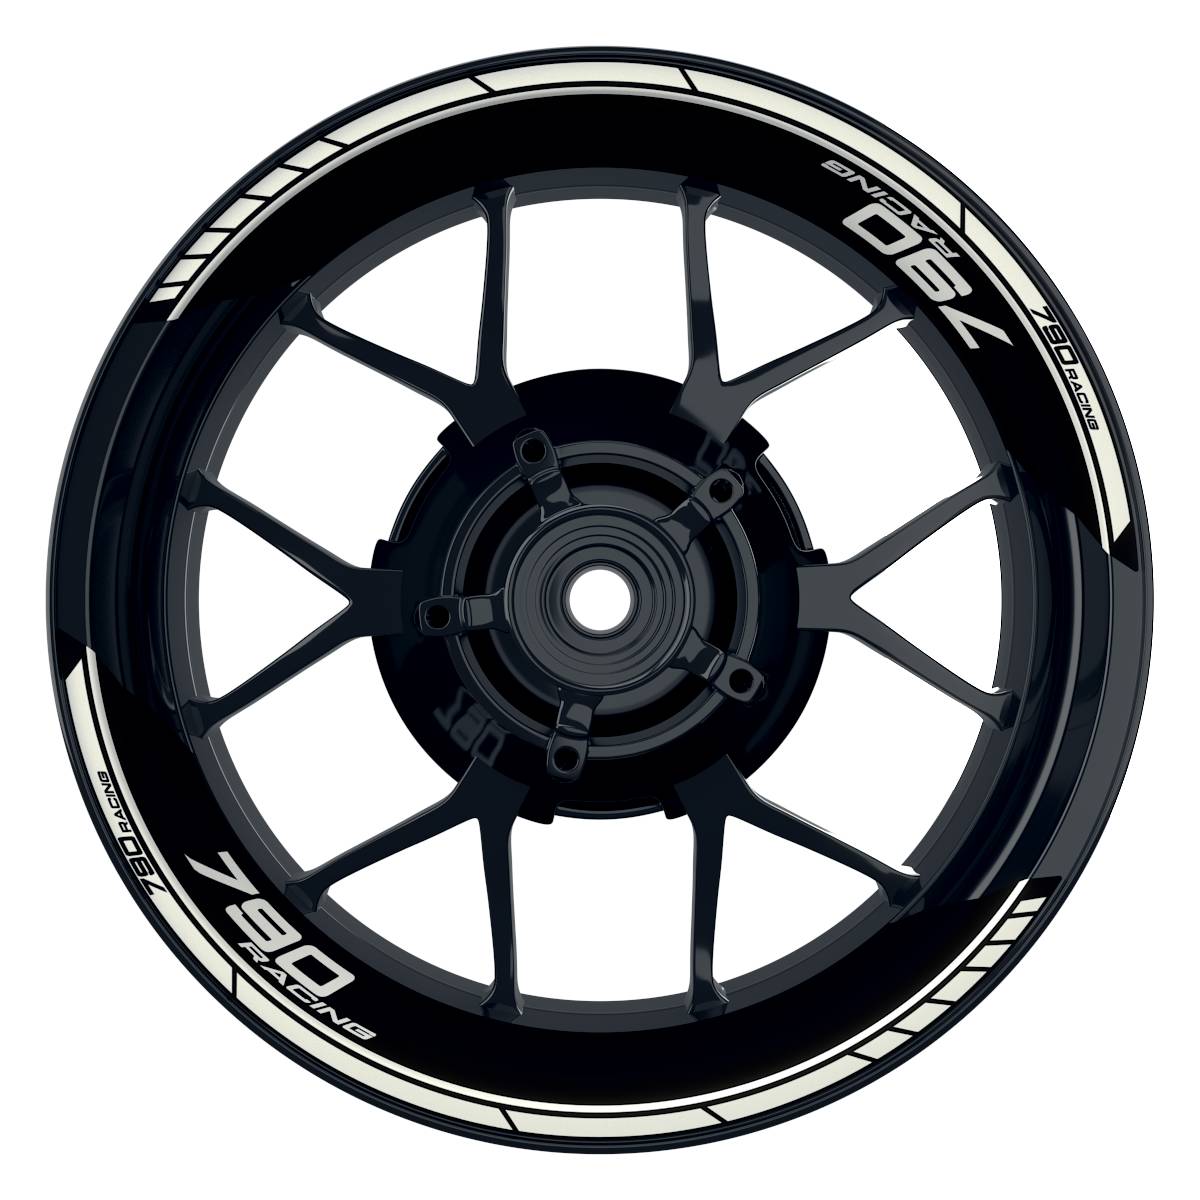 KTM Racing 790 Clean schwarz weiss Frontansicht